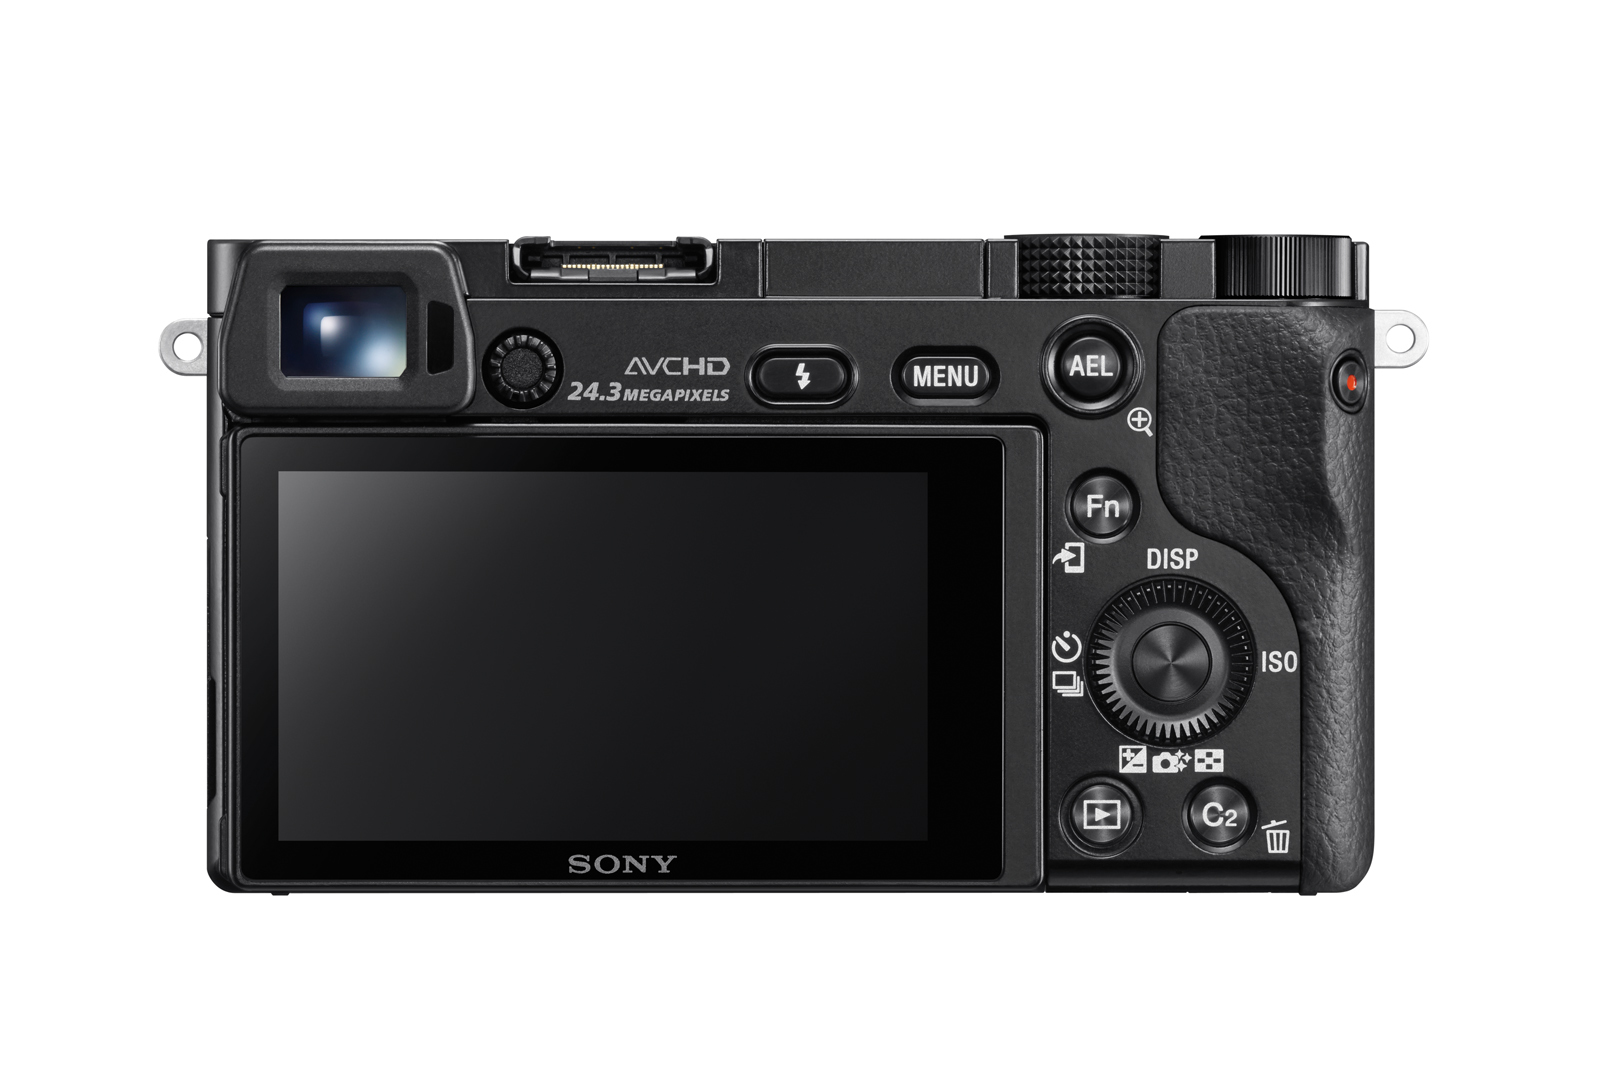 Fotocamera digitale Sony Alpha 6000L, fotocamera mirrorless con obiettivo 16-50 mm, attacco E, sensore APS-C, 24.3 MP